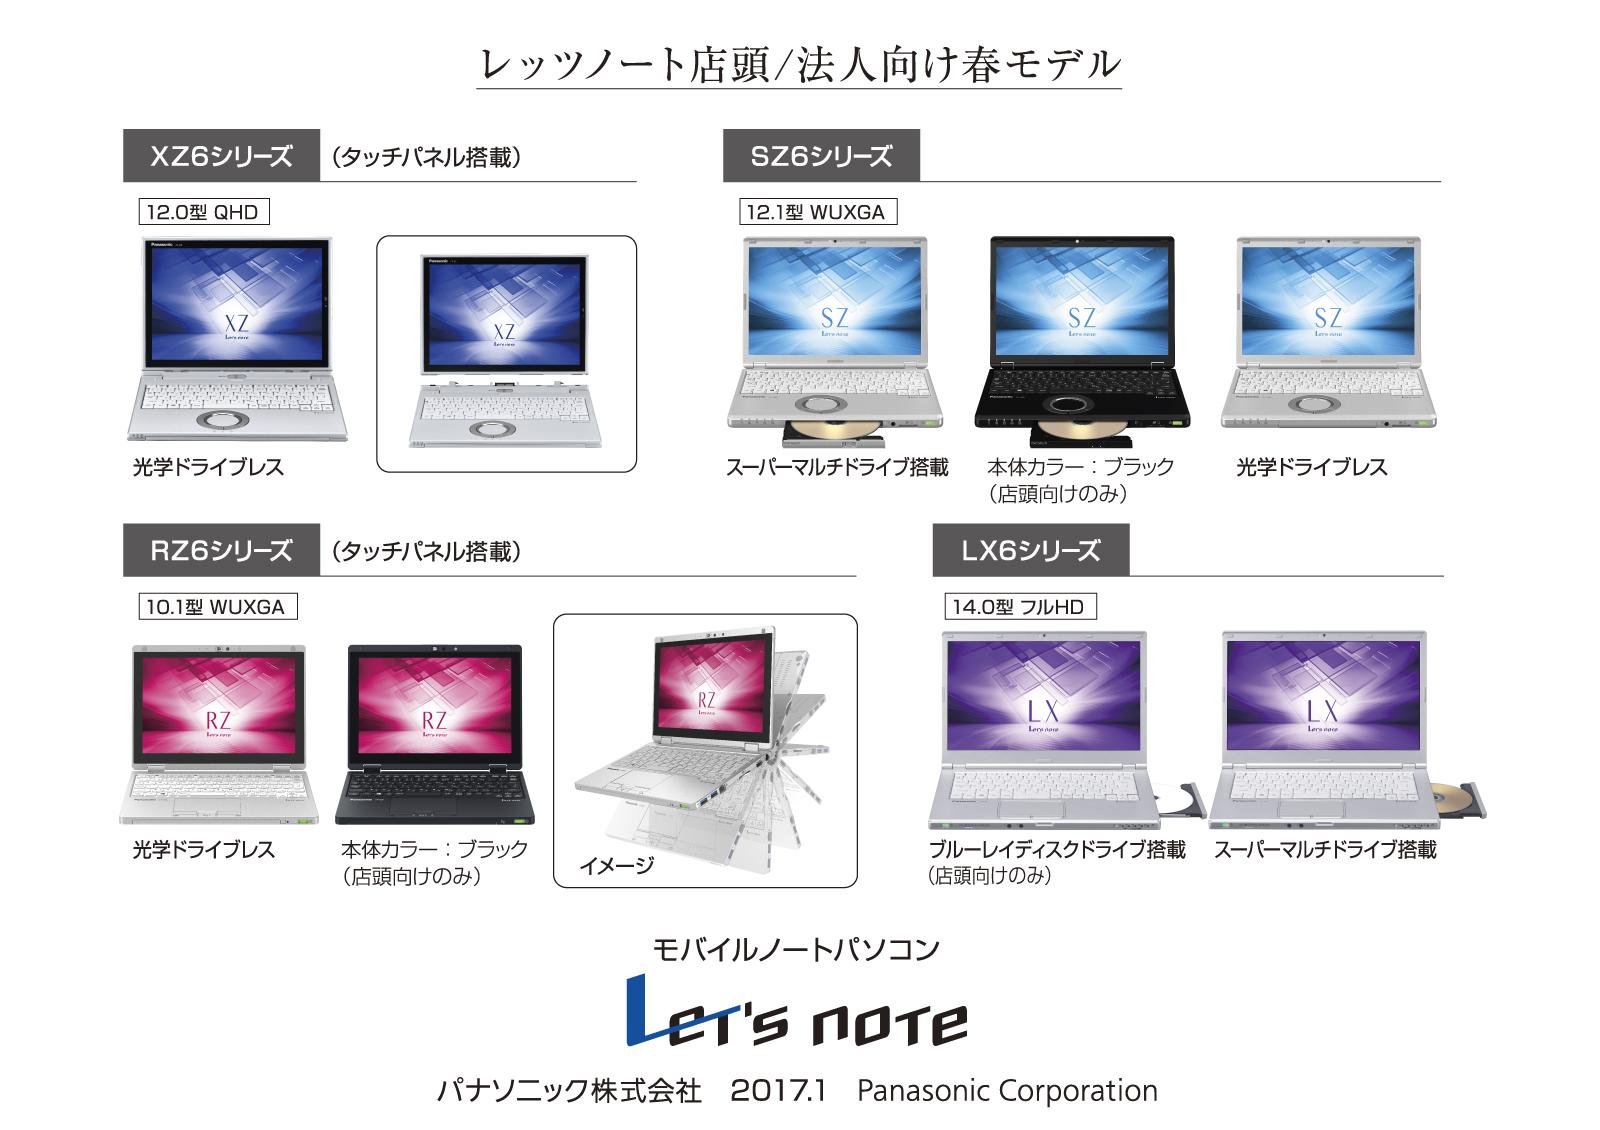 PC/タブレット ノートPC モバイルパソコン 「Let's note」 個人店頭/法人向け 春モデル発売 